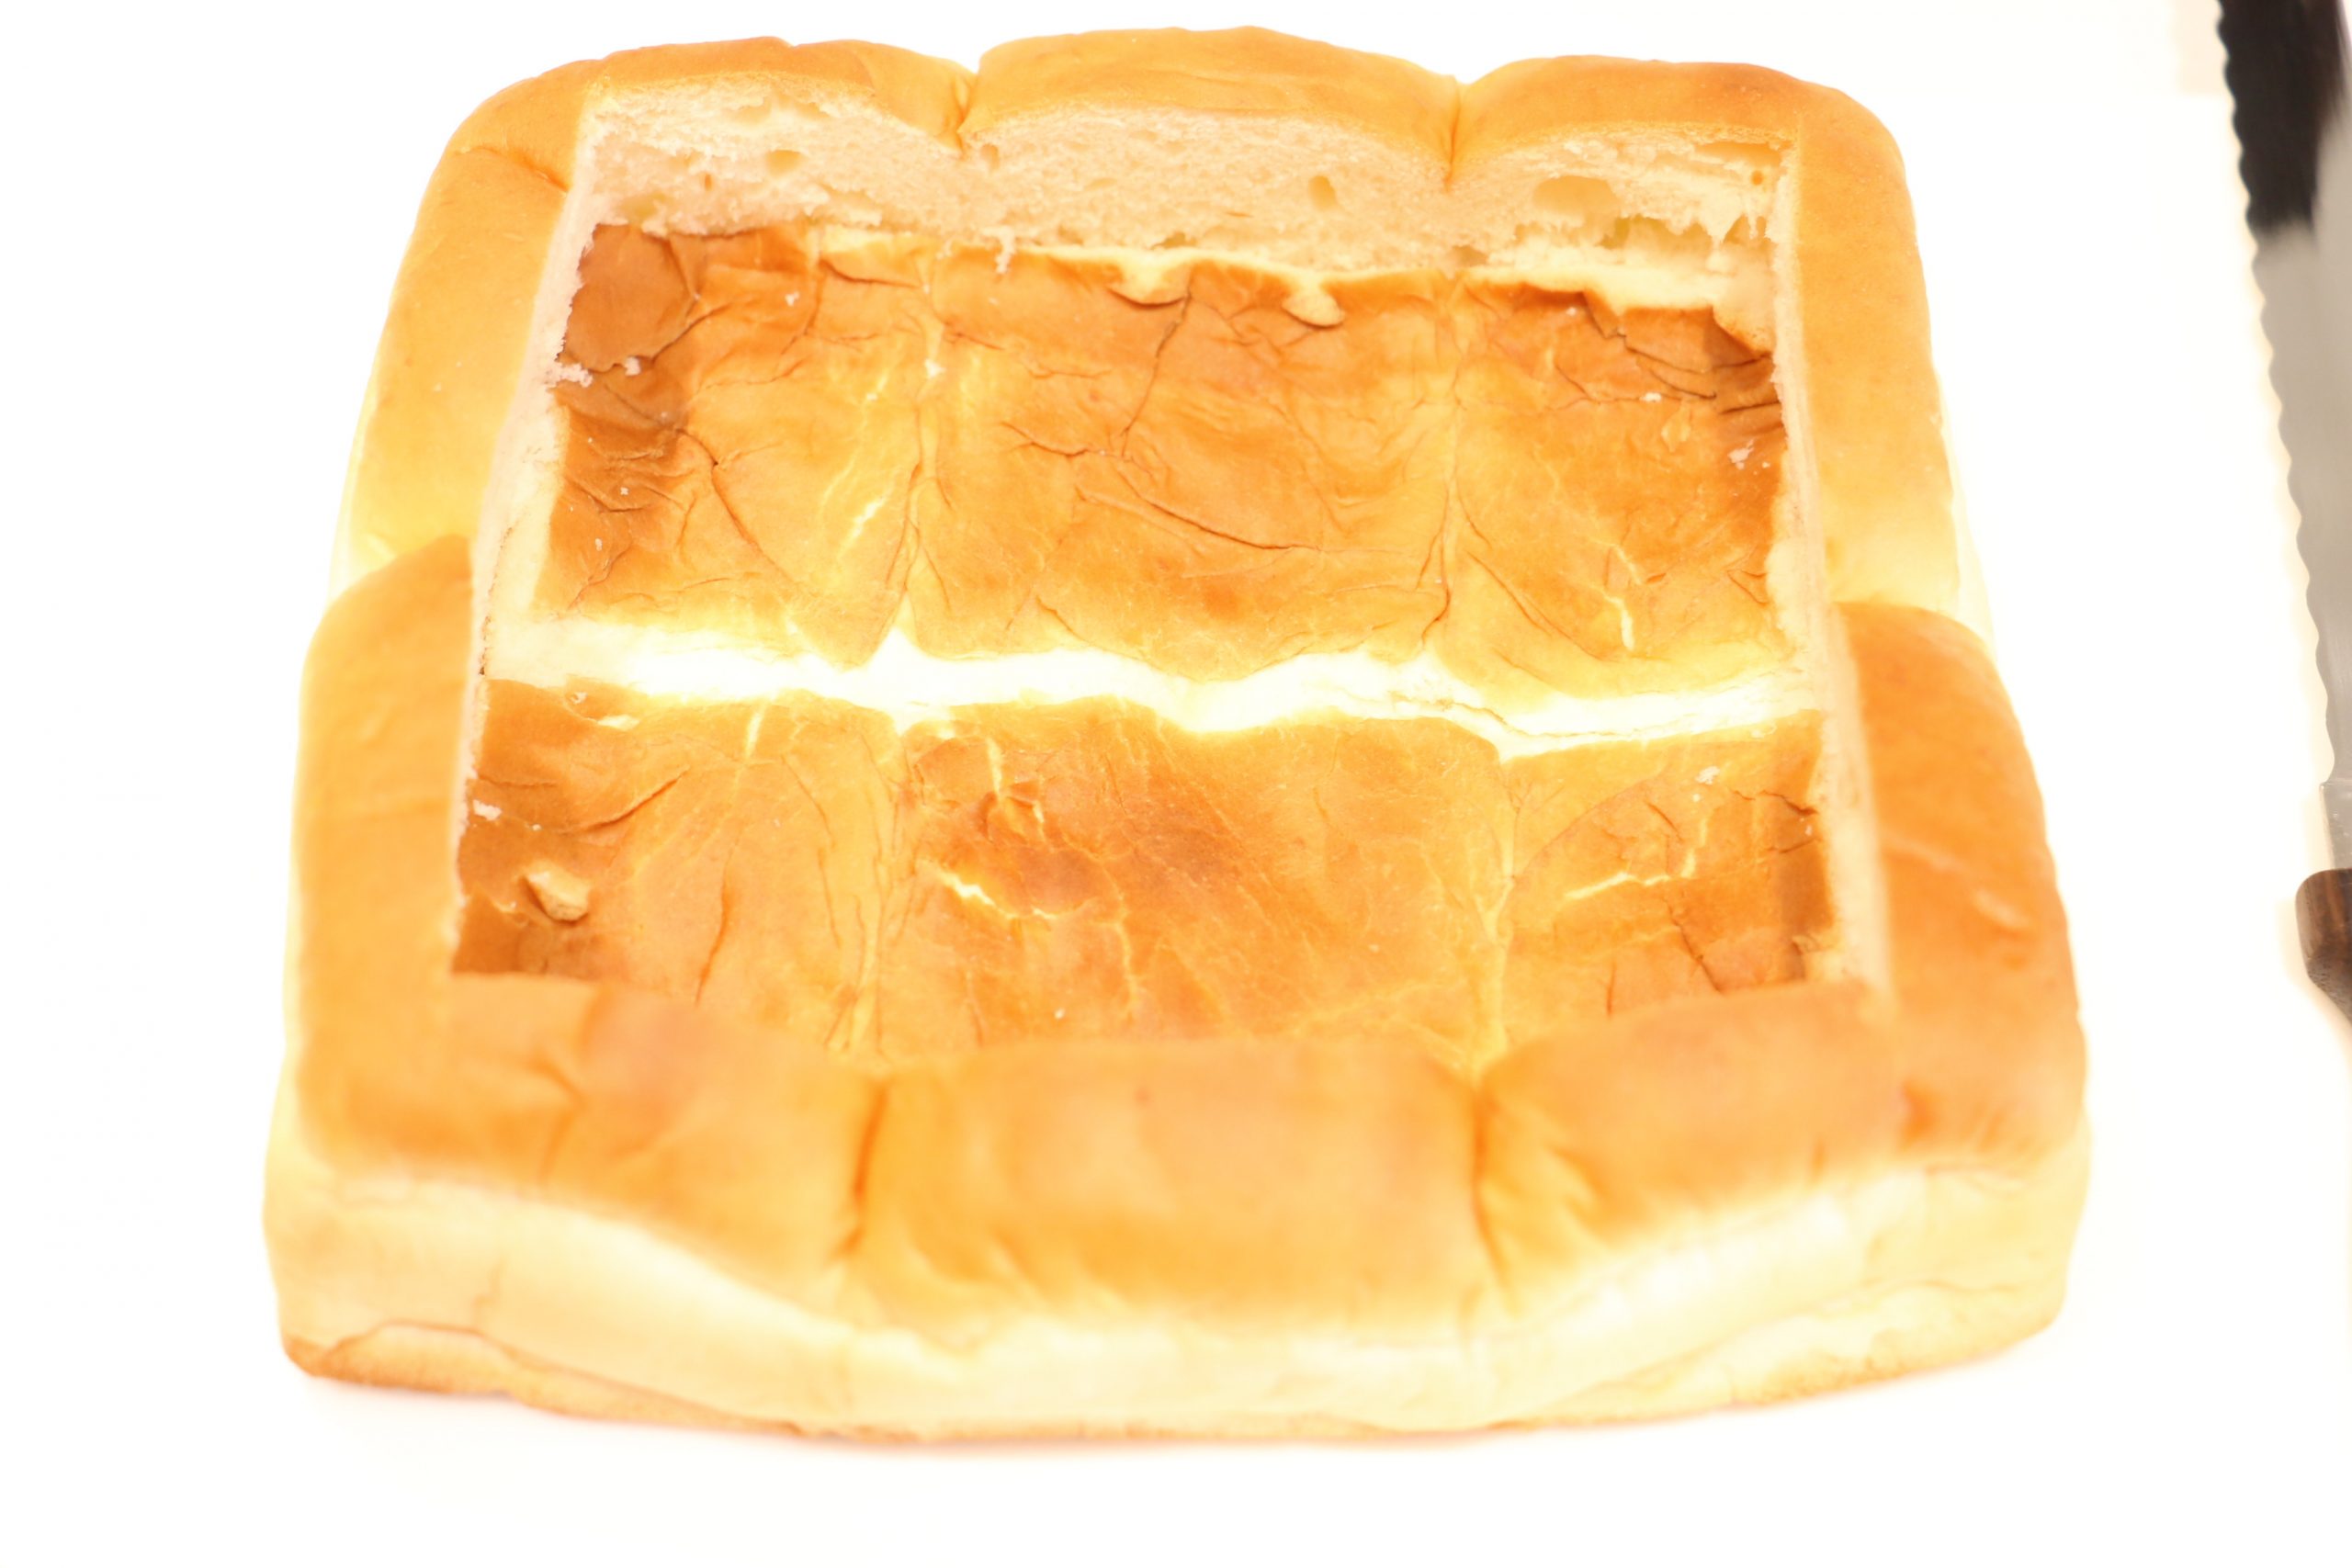 パンは1.5ｃｍ程度端を残し、包丁で切り込みを入れる。（下まで切らないよう注意）
切り込みに沿ってパンを押し込む。